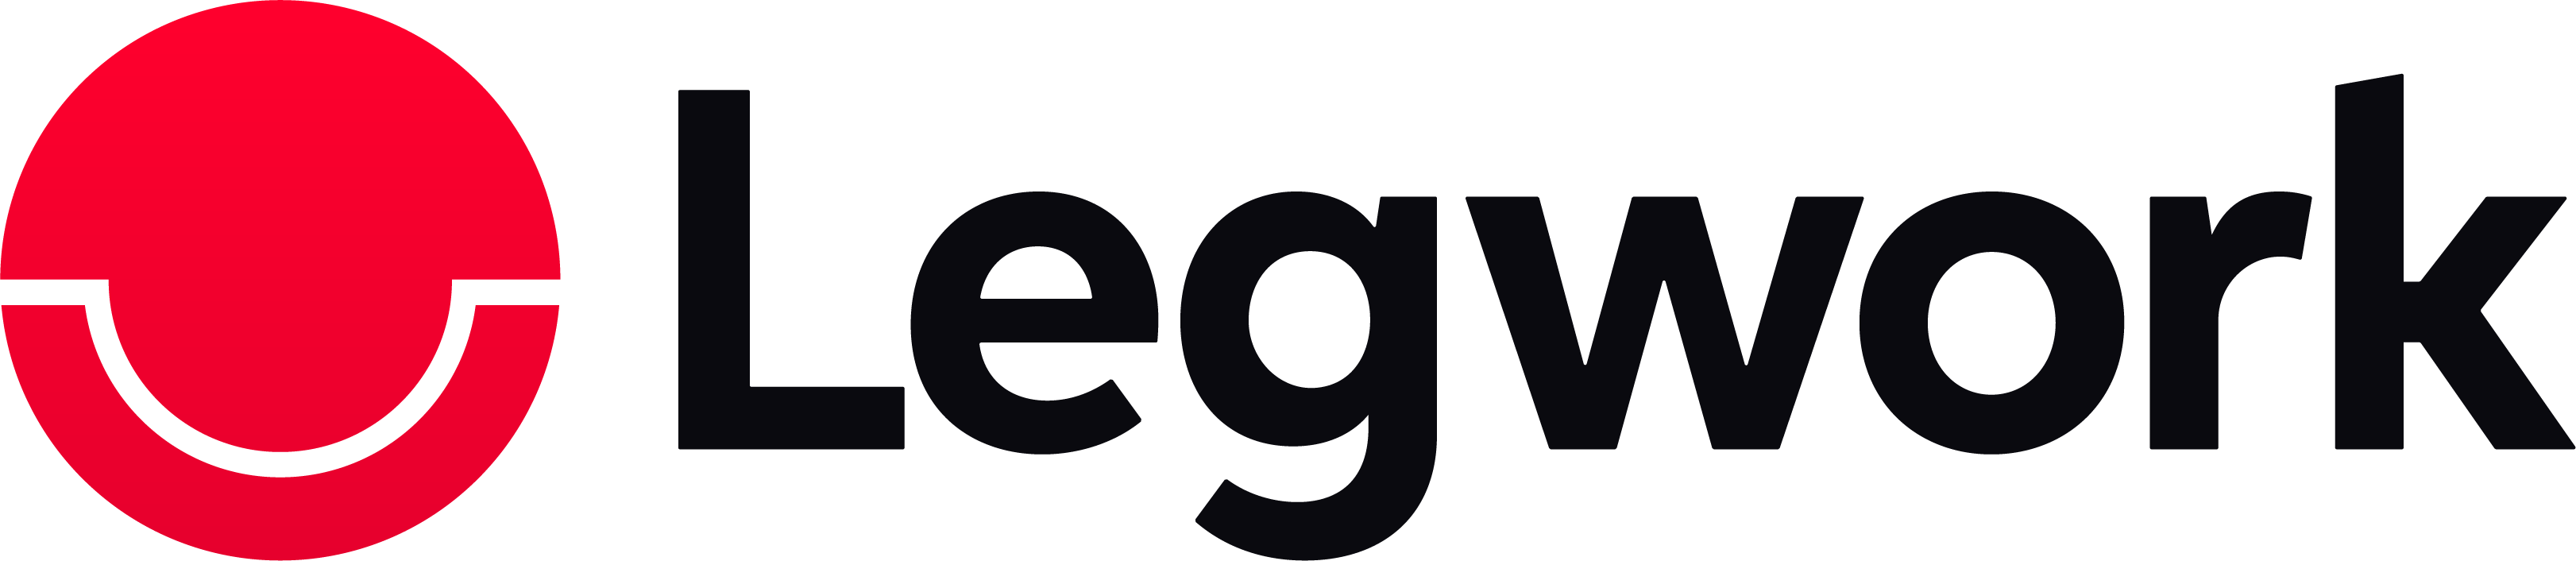 Legwork Logo (1)